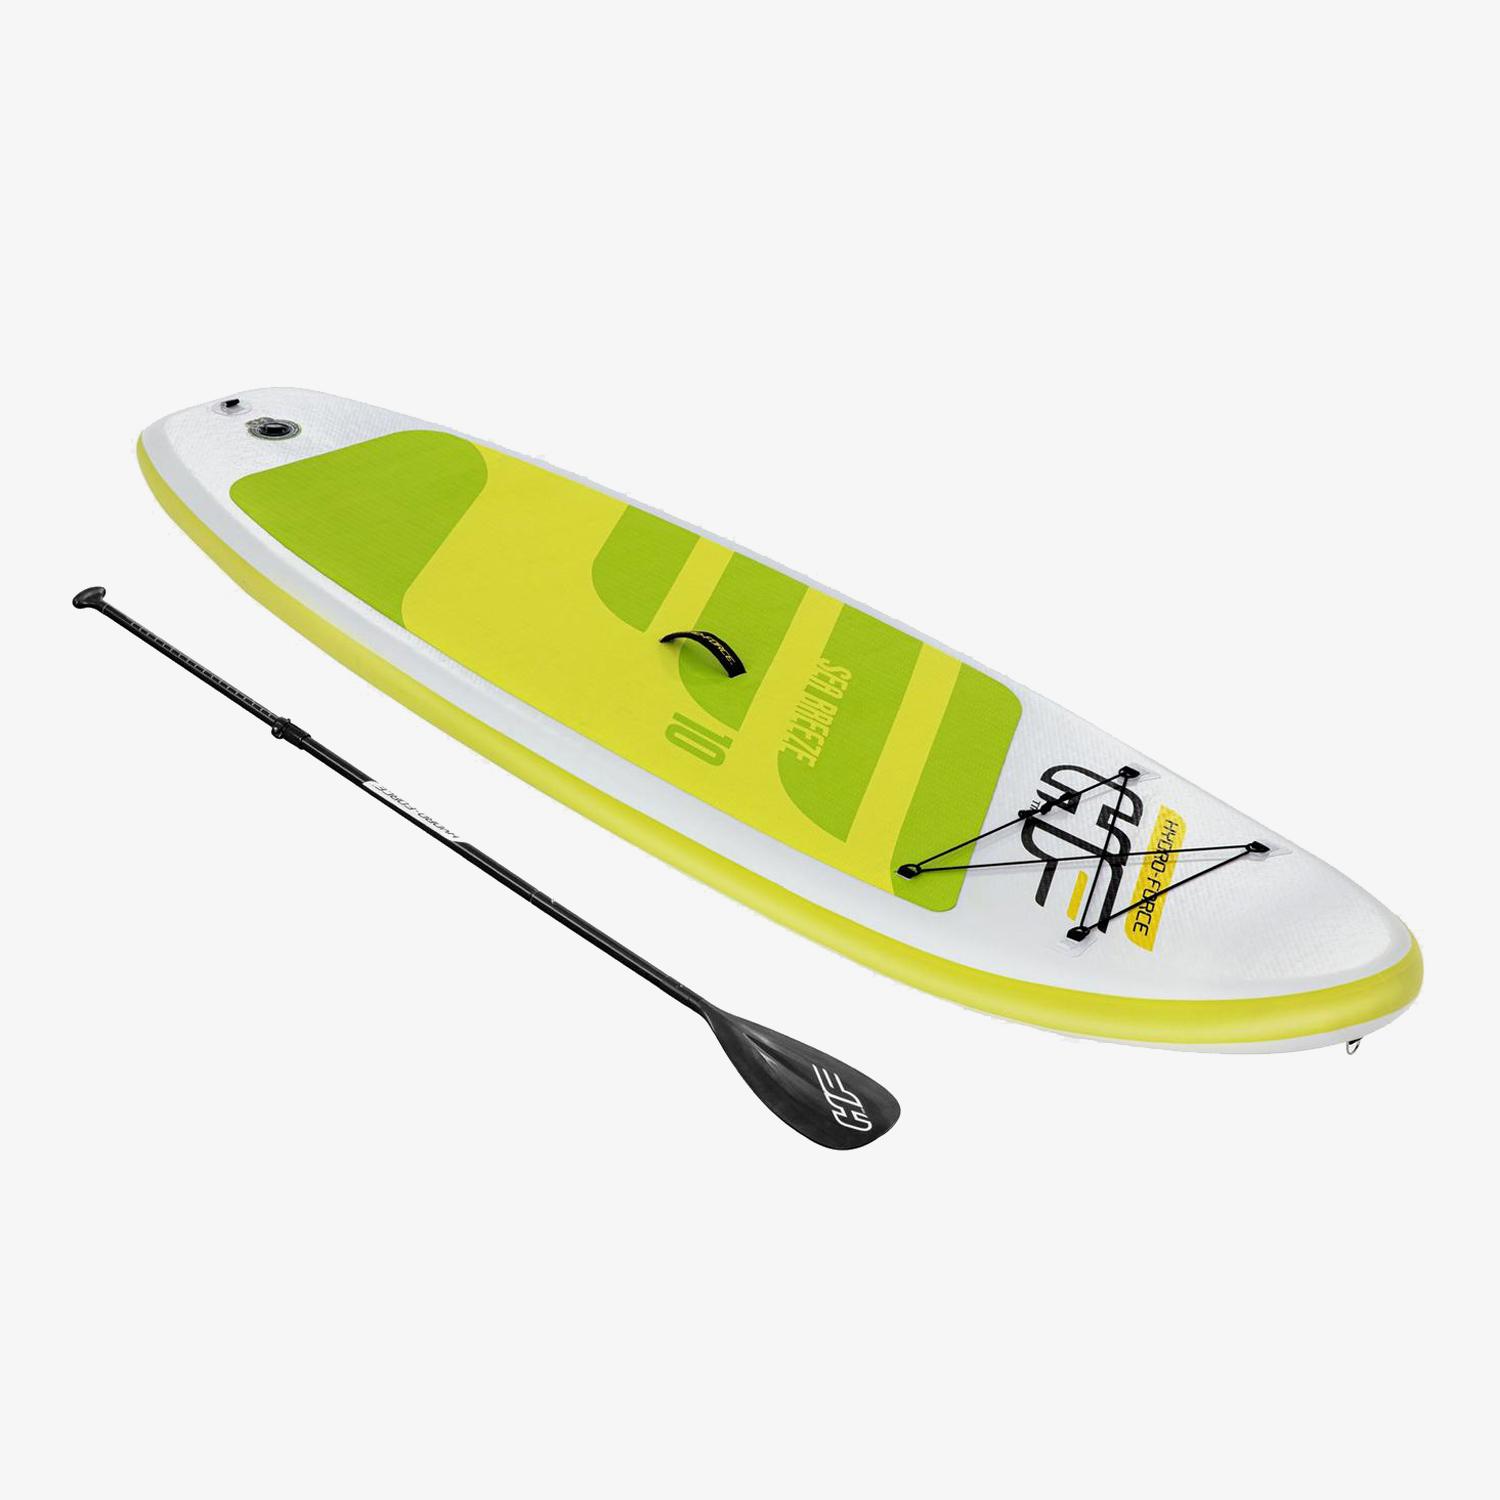 Juego de tablas de paddle surf hinchables verde y blanco